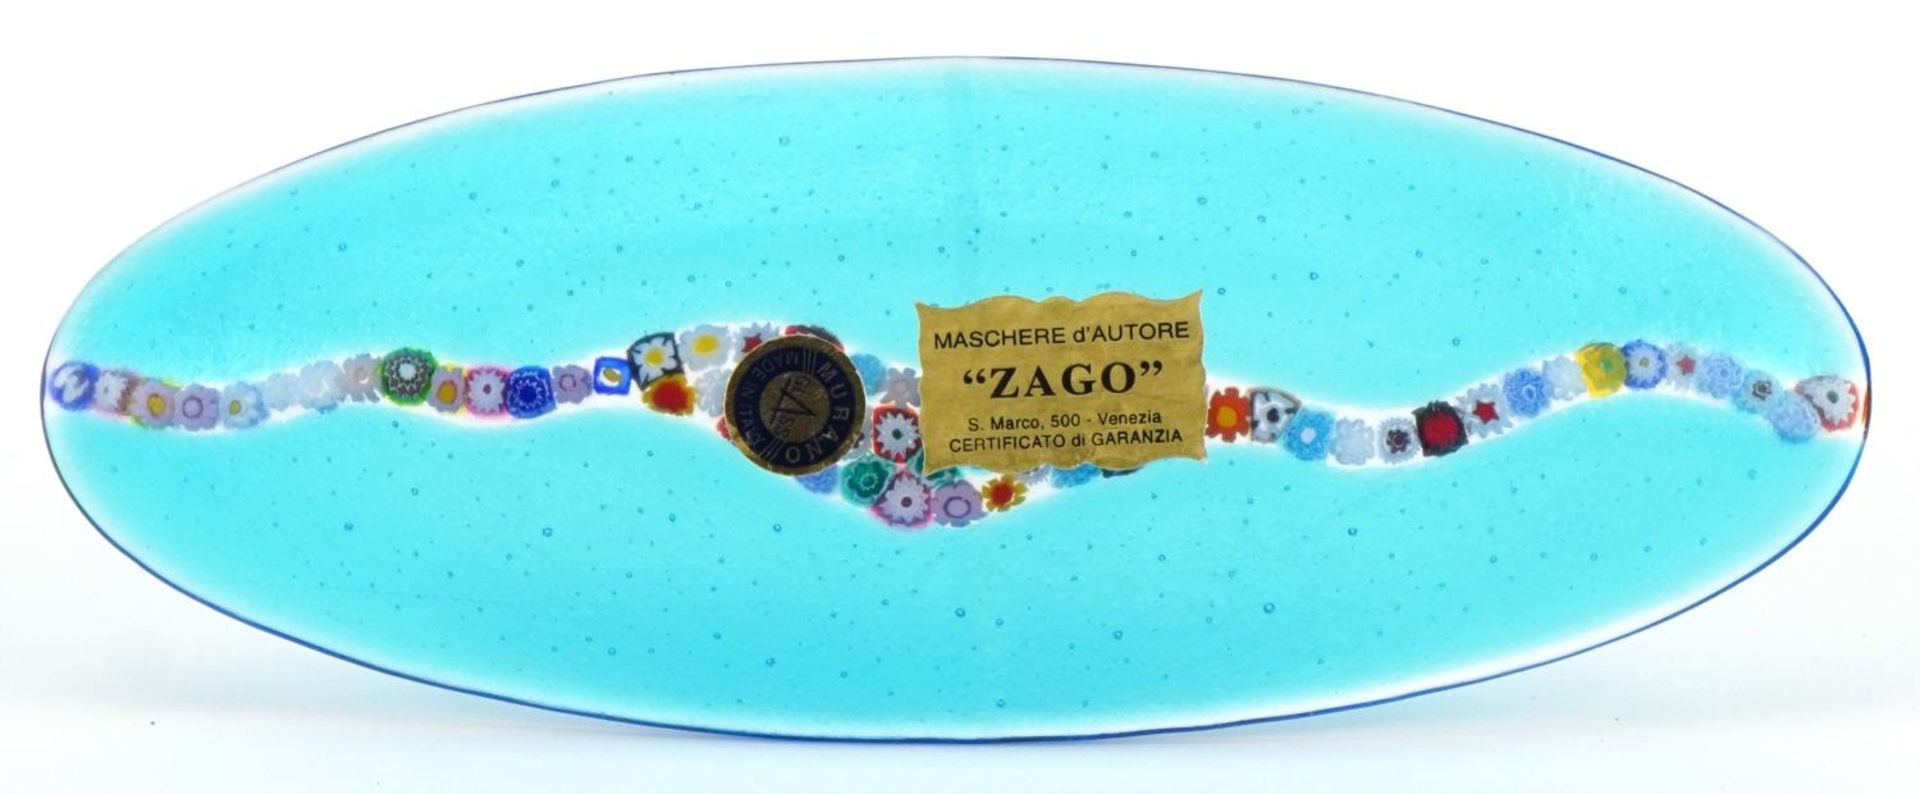 Murano Venetian millefiori glass dish, Zago paper label to the base, 22cm wide - Image 4 of 4